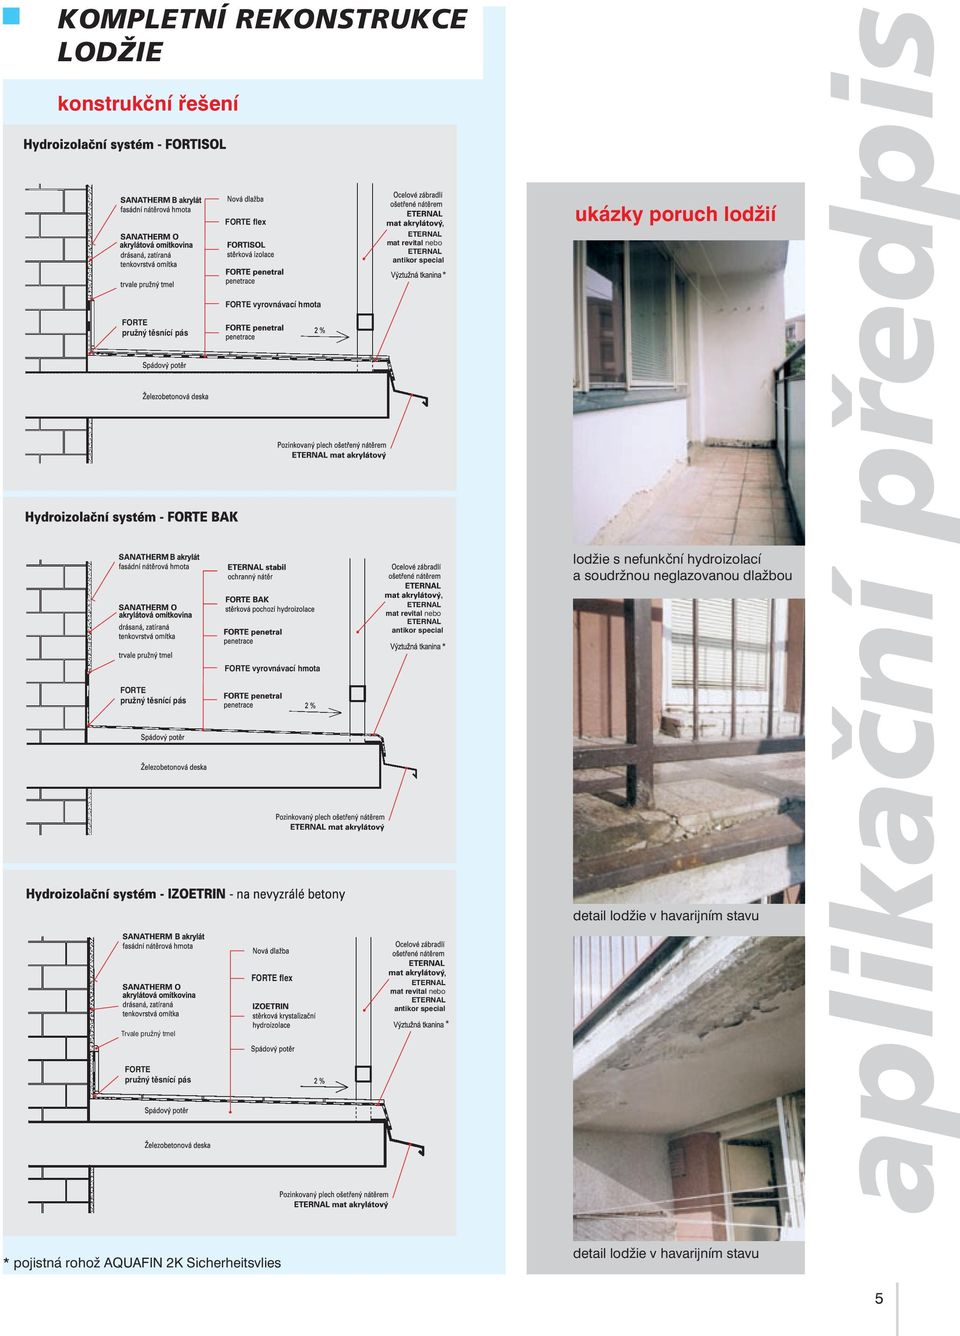 aplikační předpis HYDROIZOLACE aplikační předpis sanace balkonů a lodžií  sanace betonu sanace železobetonových konstrukcí hydroizolace koupelen -  PDF Stažení zdarma